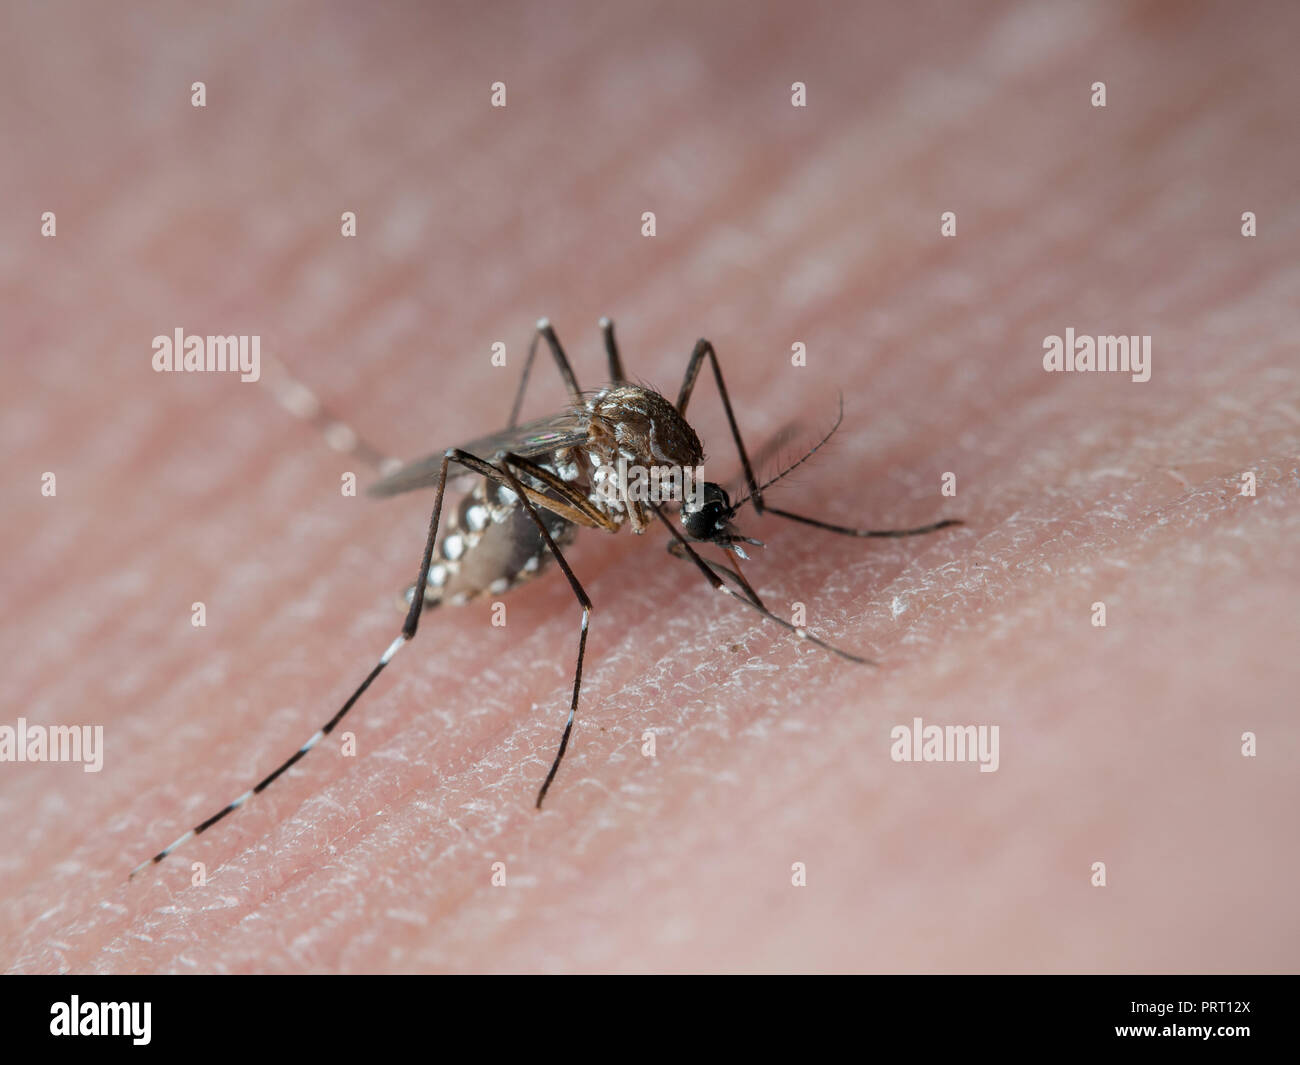 Mosquito Aedes aegypti (mosquito da dengue) a chupar la sangre en la piel humana. Vector de la fiebre del dengue, la fiebre amarilla y el Chikungunya virus zika. Foto de stock